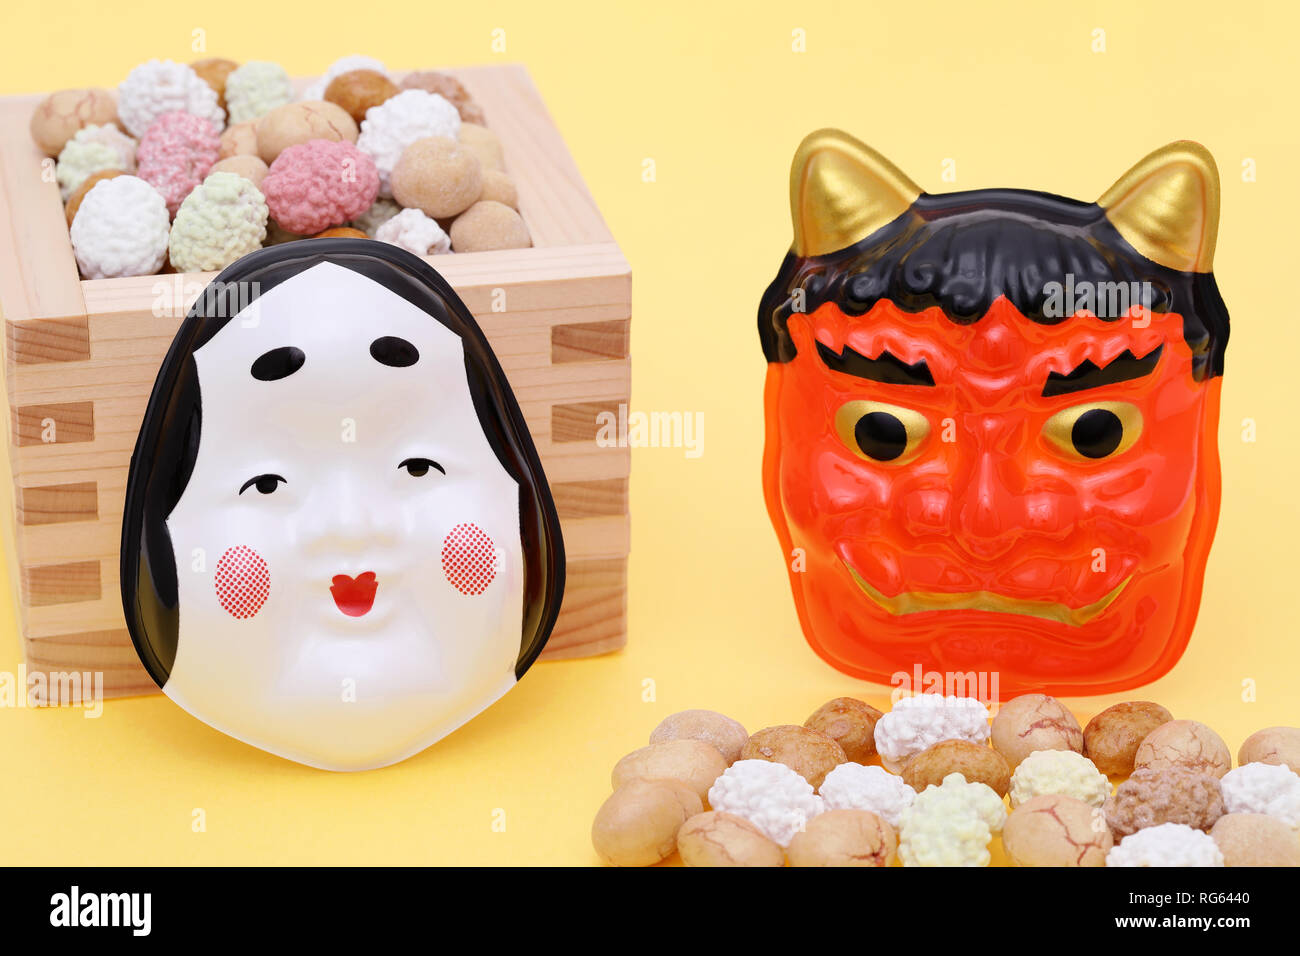 Giapponese tradizionale evento, snack di soia e la maschera del demonio sono utilizzati su un evento annuale /Setsubun. Foto Stock